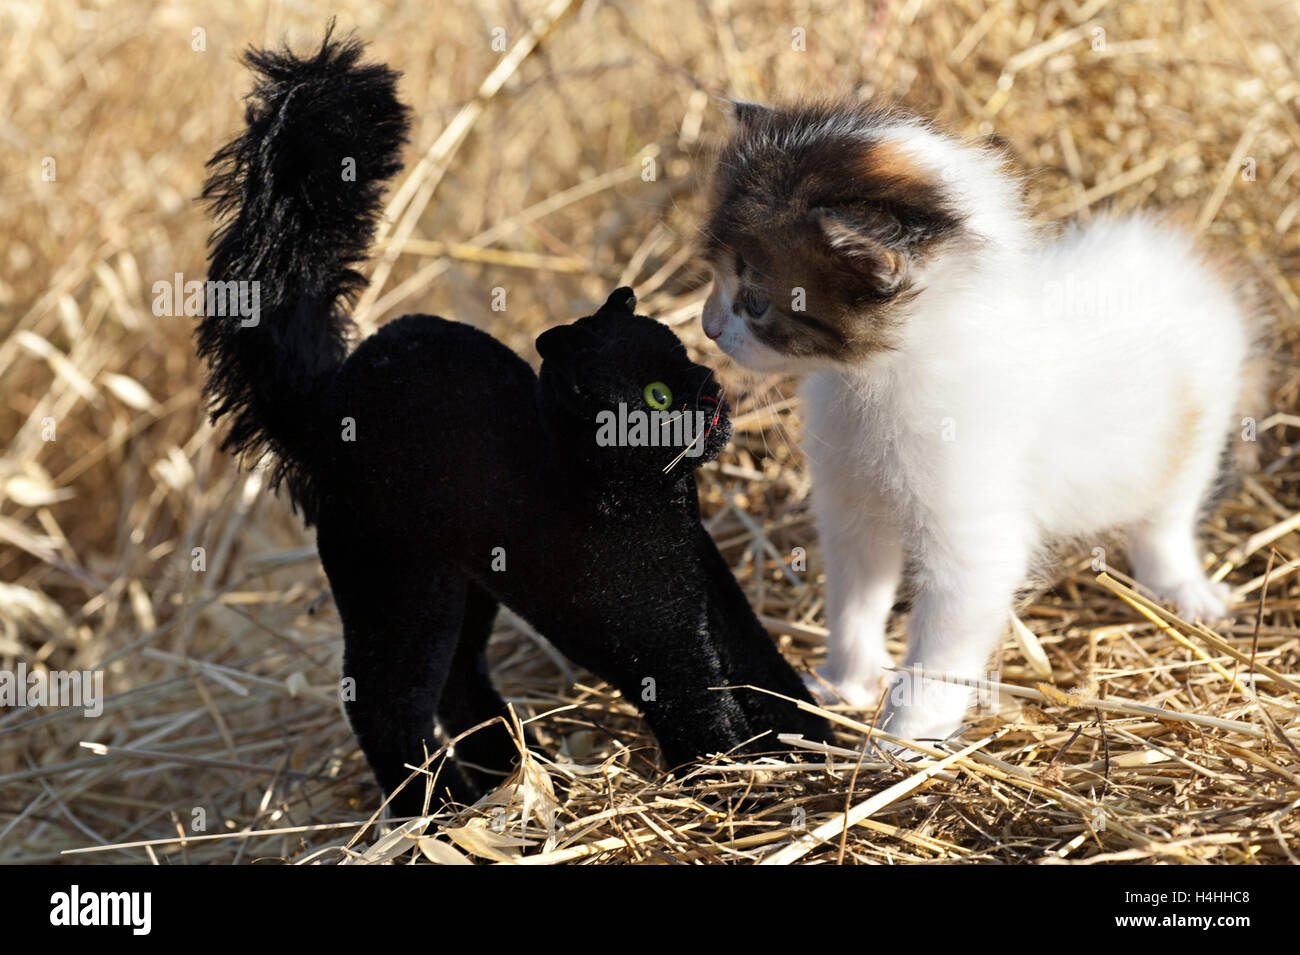 Chaton face à face avec un chat Peluche noire dans un champ Banque D'Images